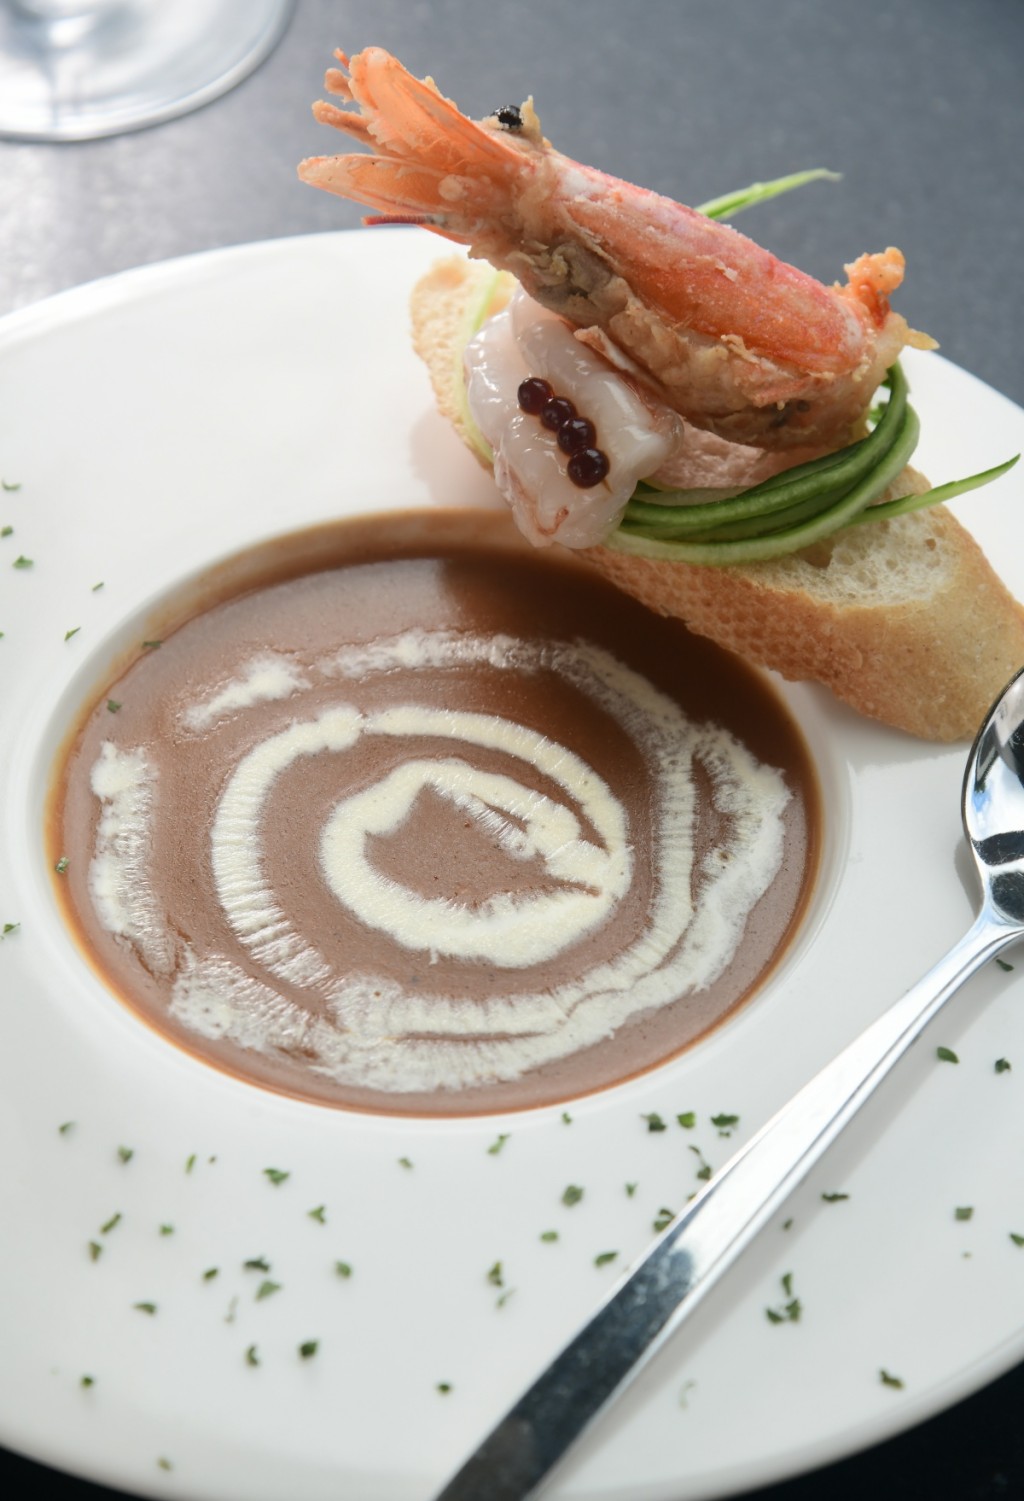 法式龍蝦湯，傳統法式方法熬製的龍蝦湯濃郁甜美，配上原隻阿根廷紅蝦刺身及脆多士，口感豐富有層次。